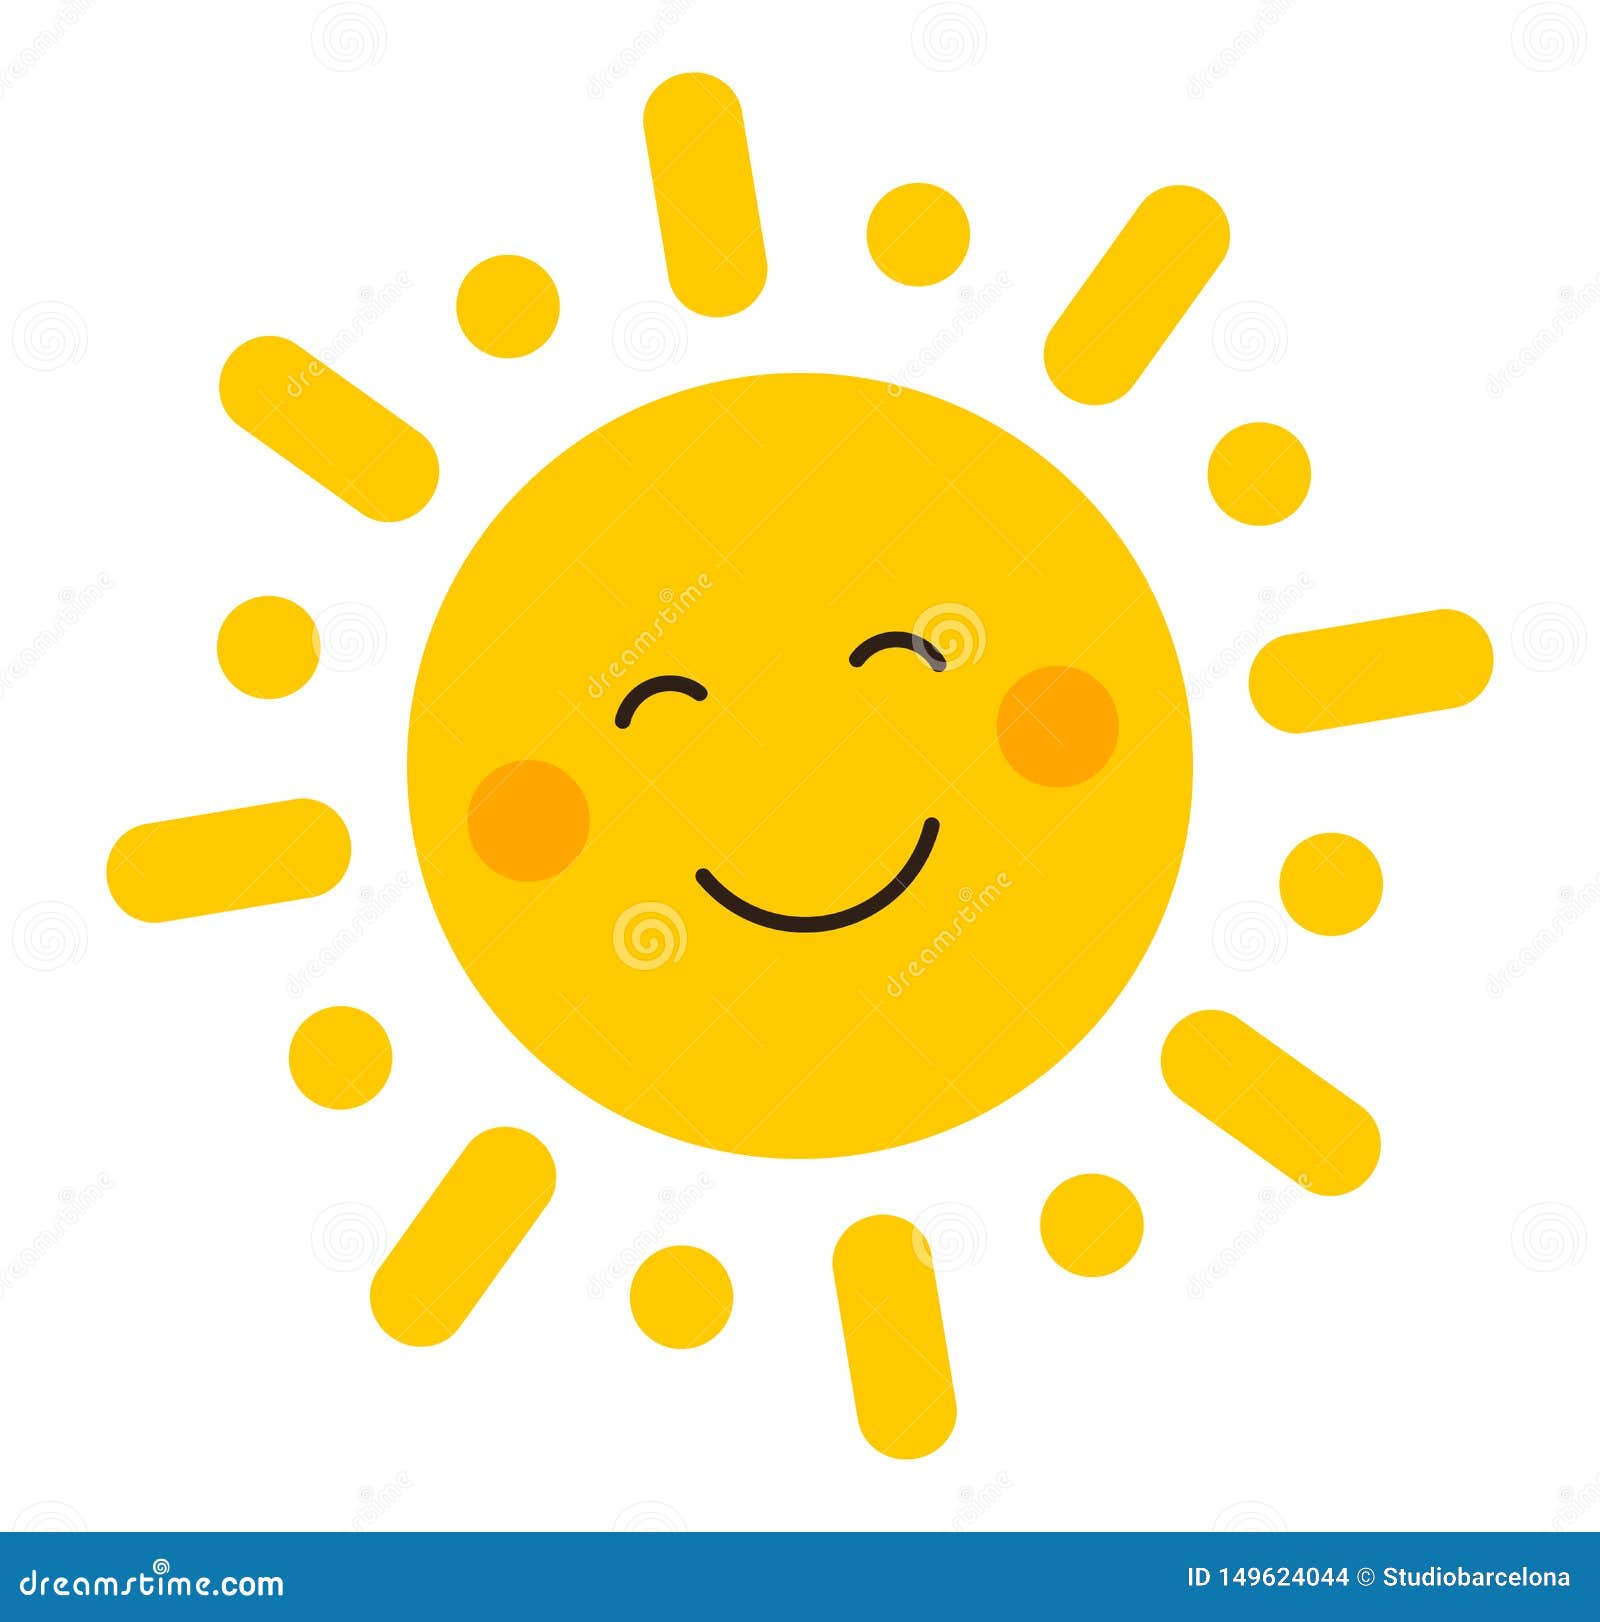 cute smiling sun icon